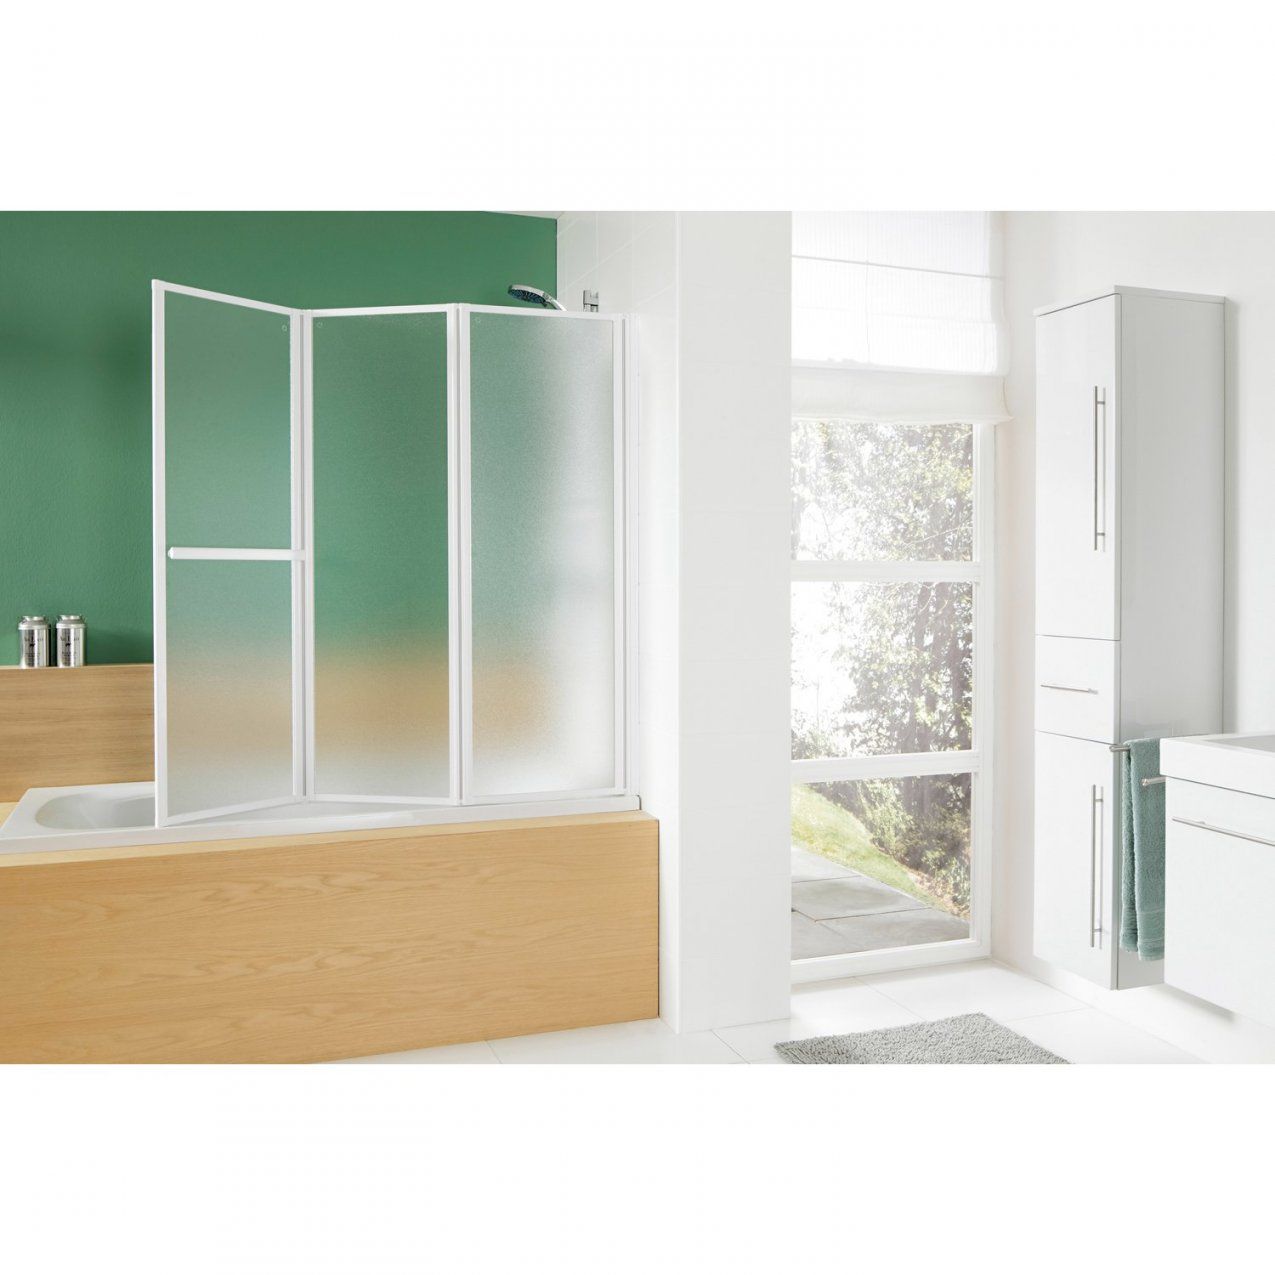 Obi Badewannenaufsatz Mit Handtuchhalter Mela Ii Echtglas 140 Cm X von Duschwand Für Badewanne Obi Photo